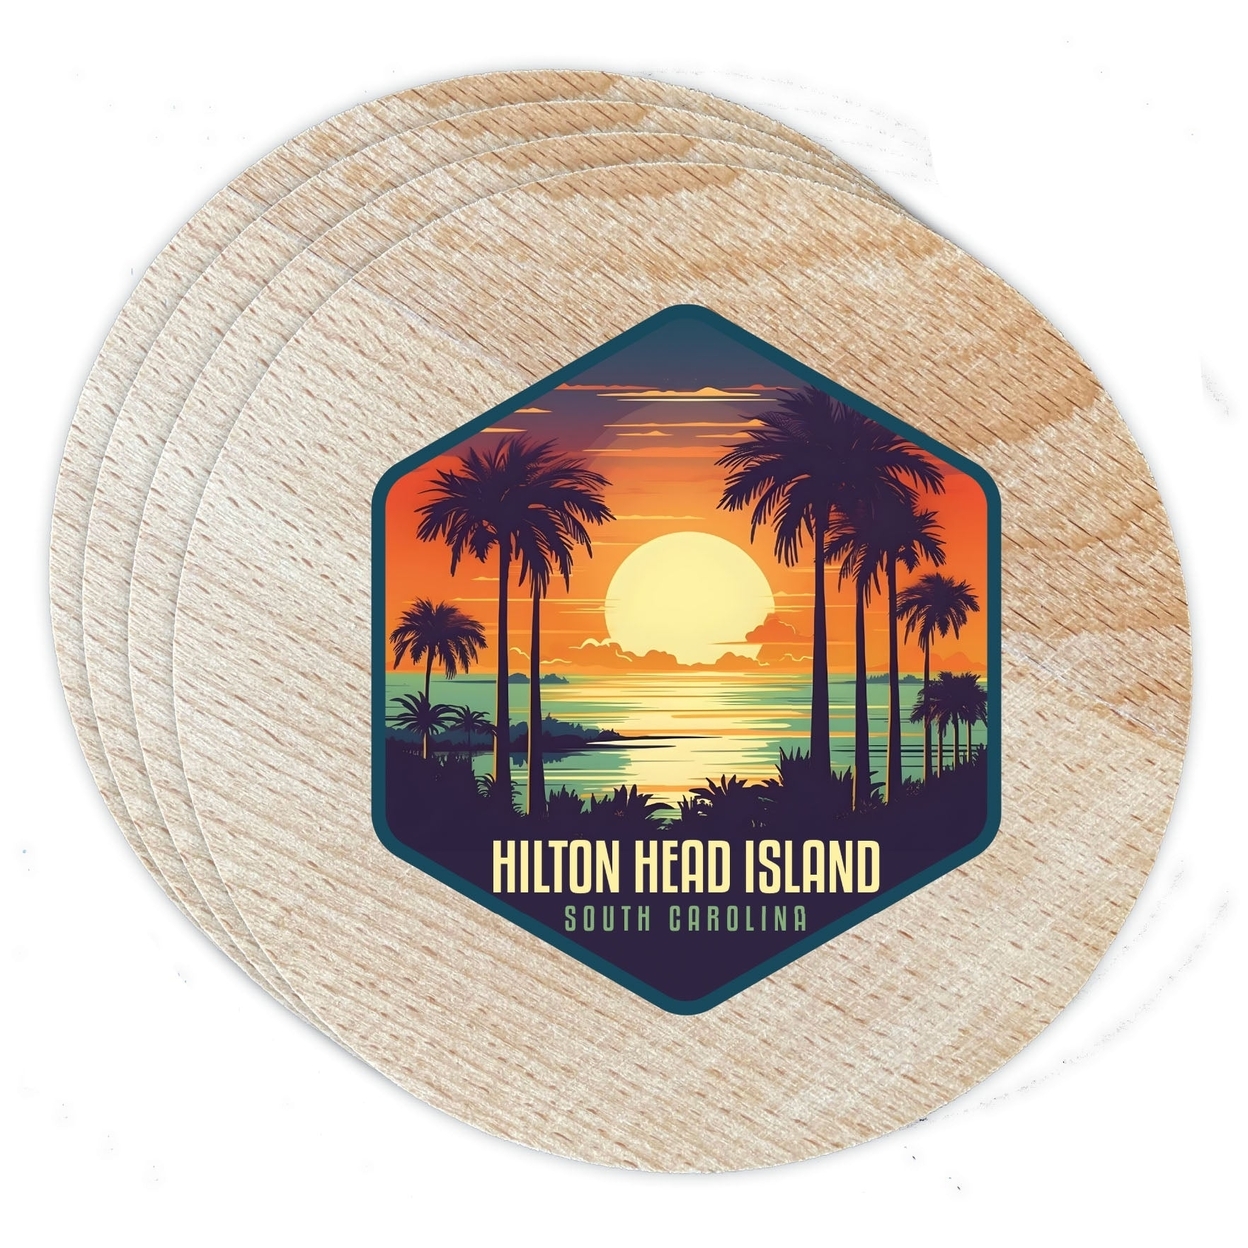 Hilton Head Island Design B Souvenir Coaster Wooden 3.5 X 3.5-Inch 4 Pack